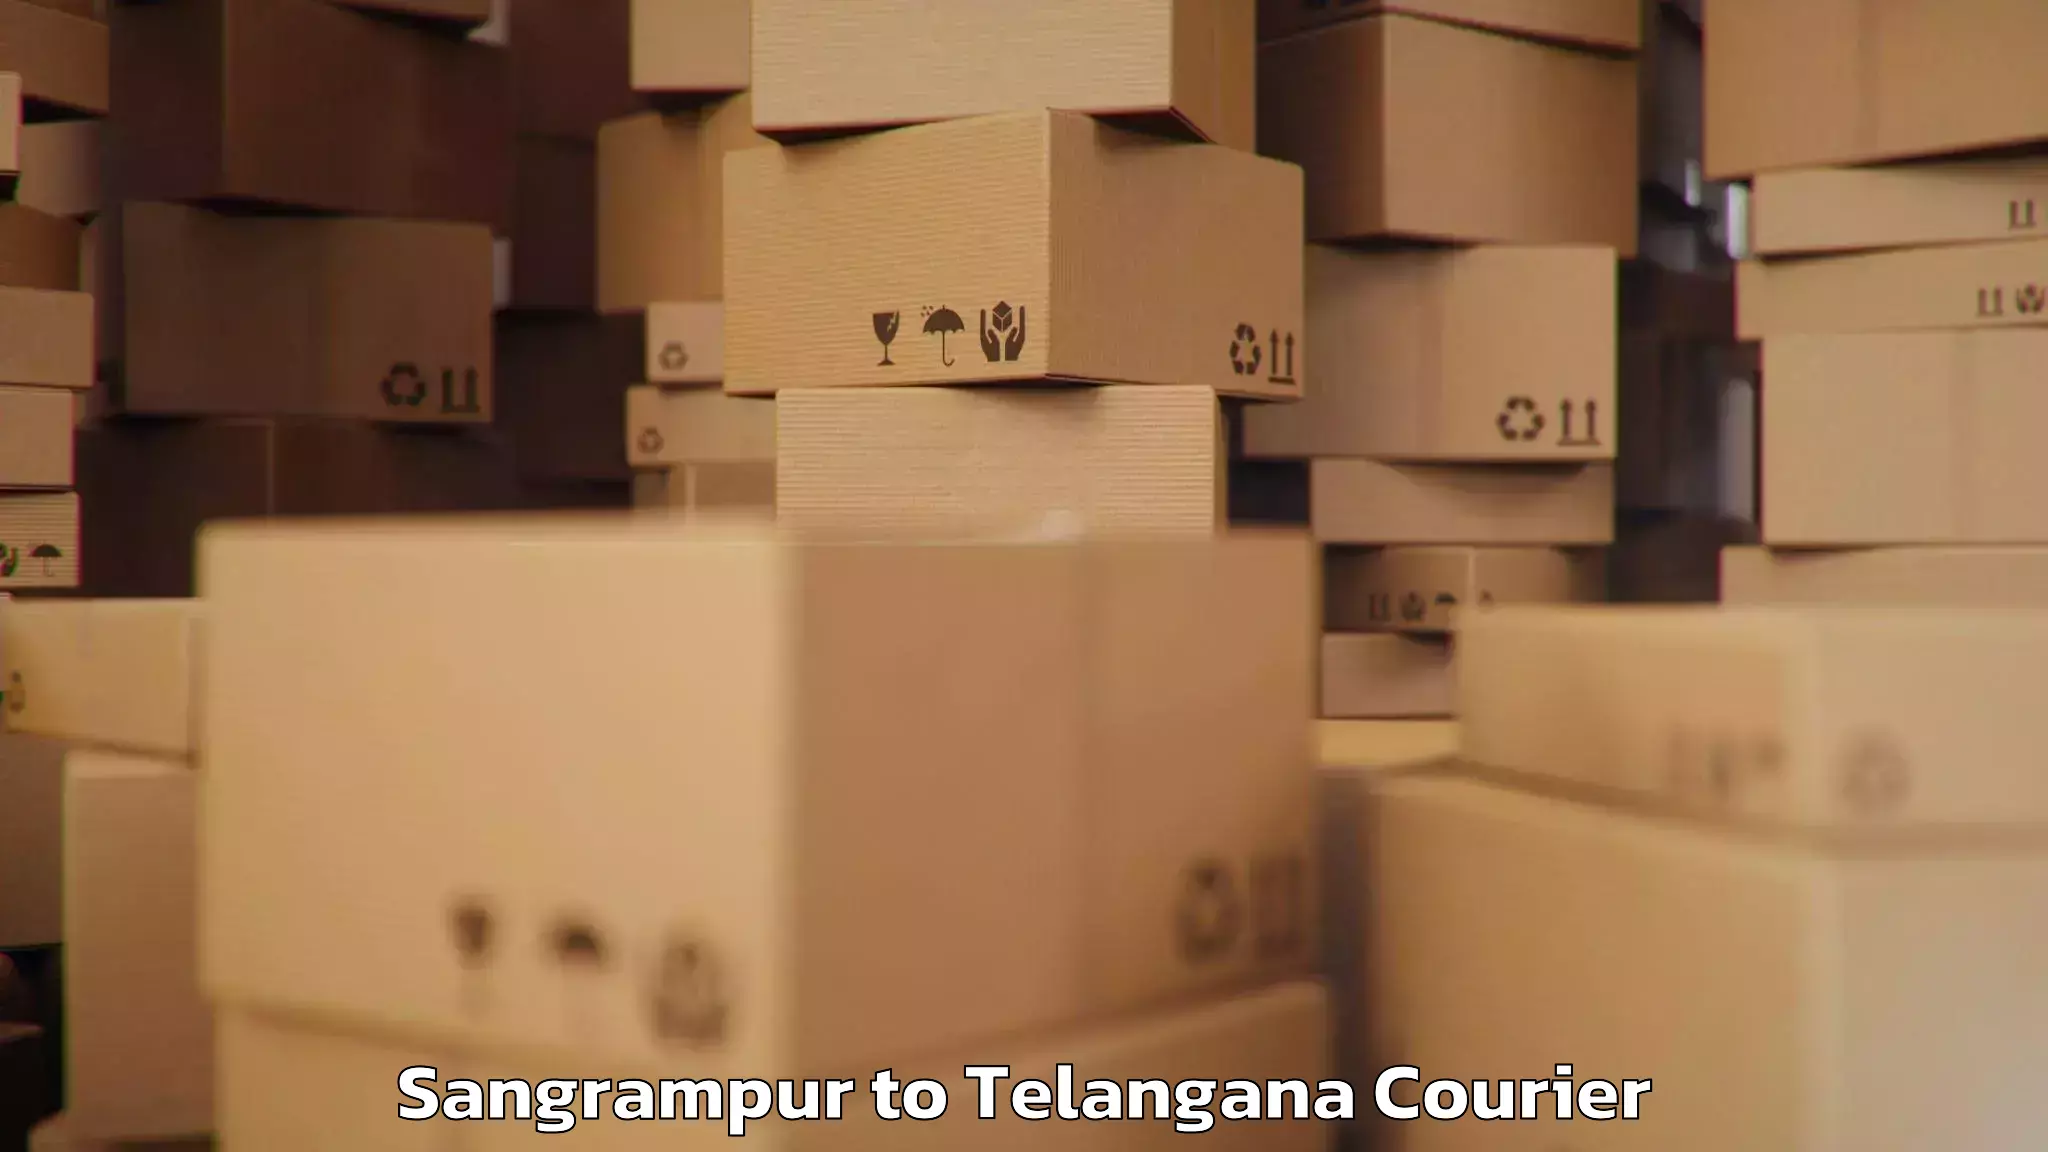 Baggage shipping rates calculator Sangrampur to Moinabad